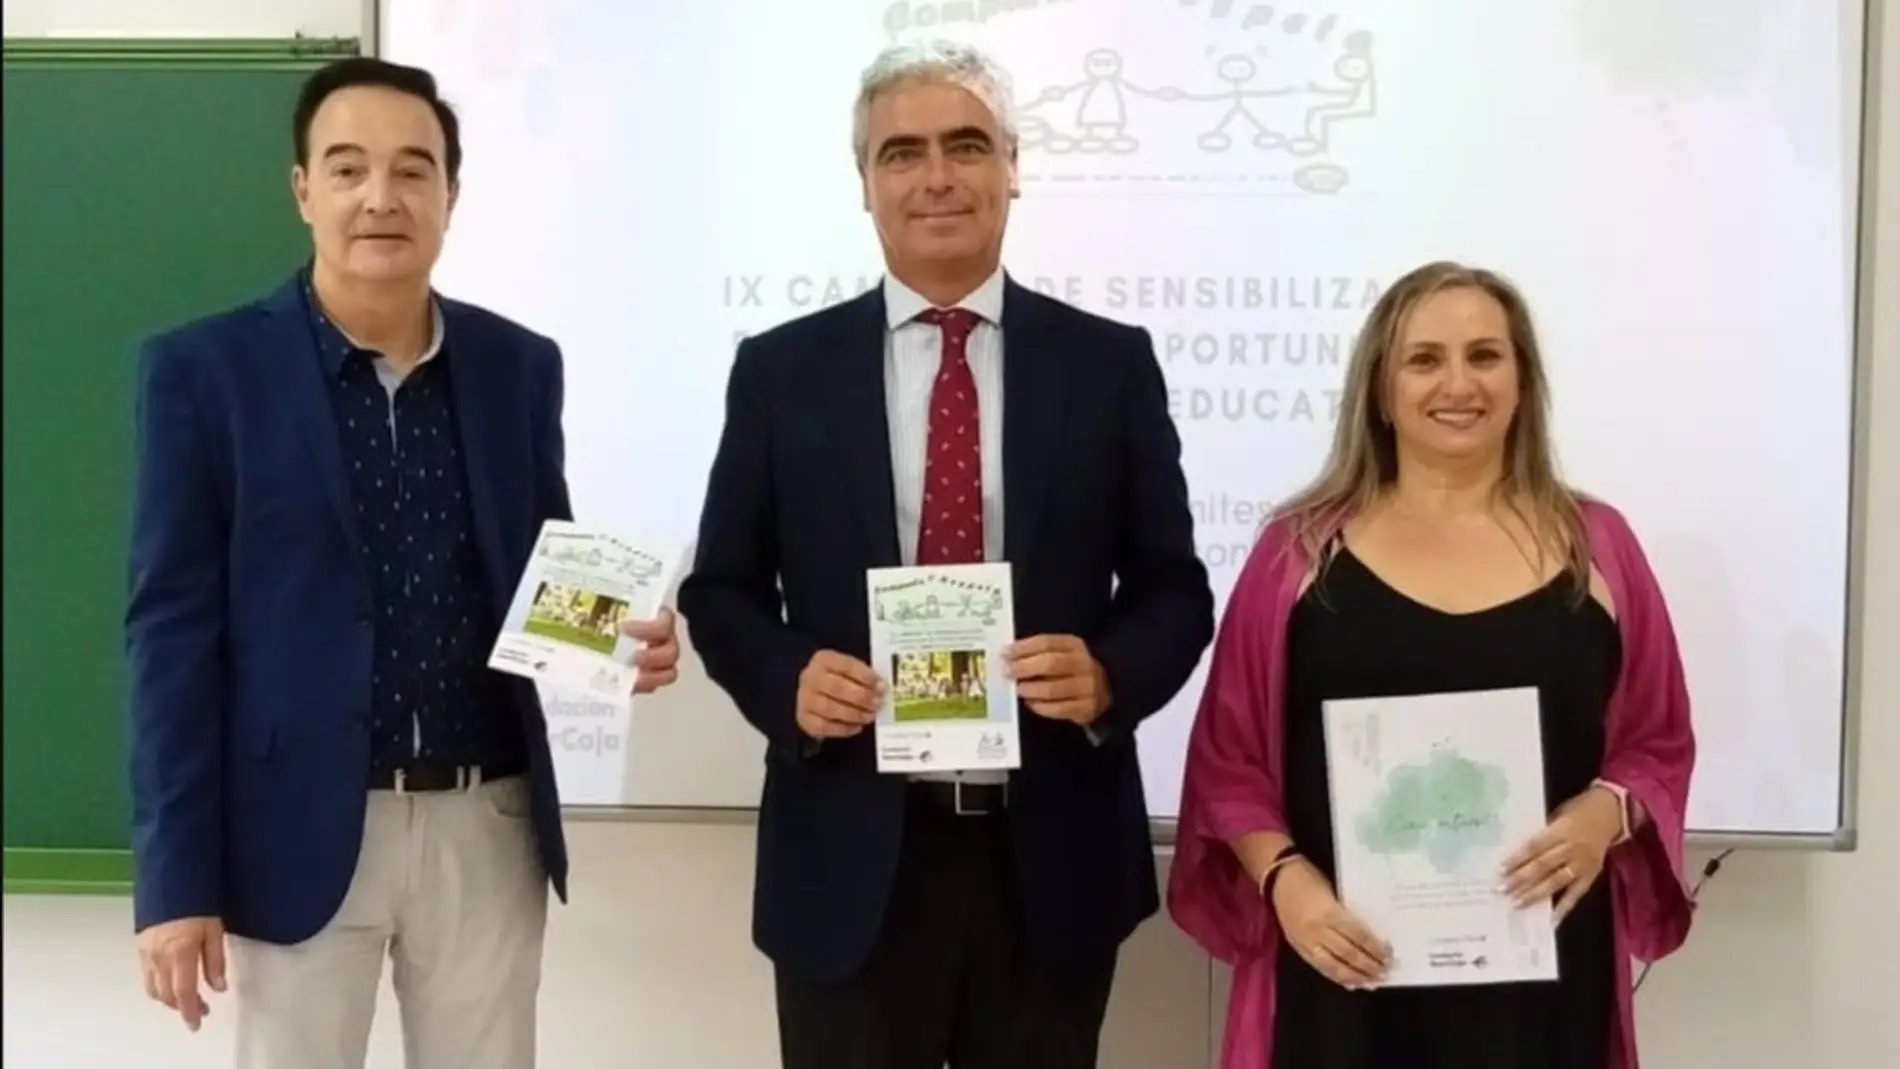 La campaña de sensibilización en igualdad de oportunidades de Cocemfe Badajoz pretende llegar a más de 2.100 estudiantes